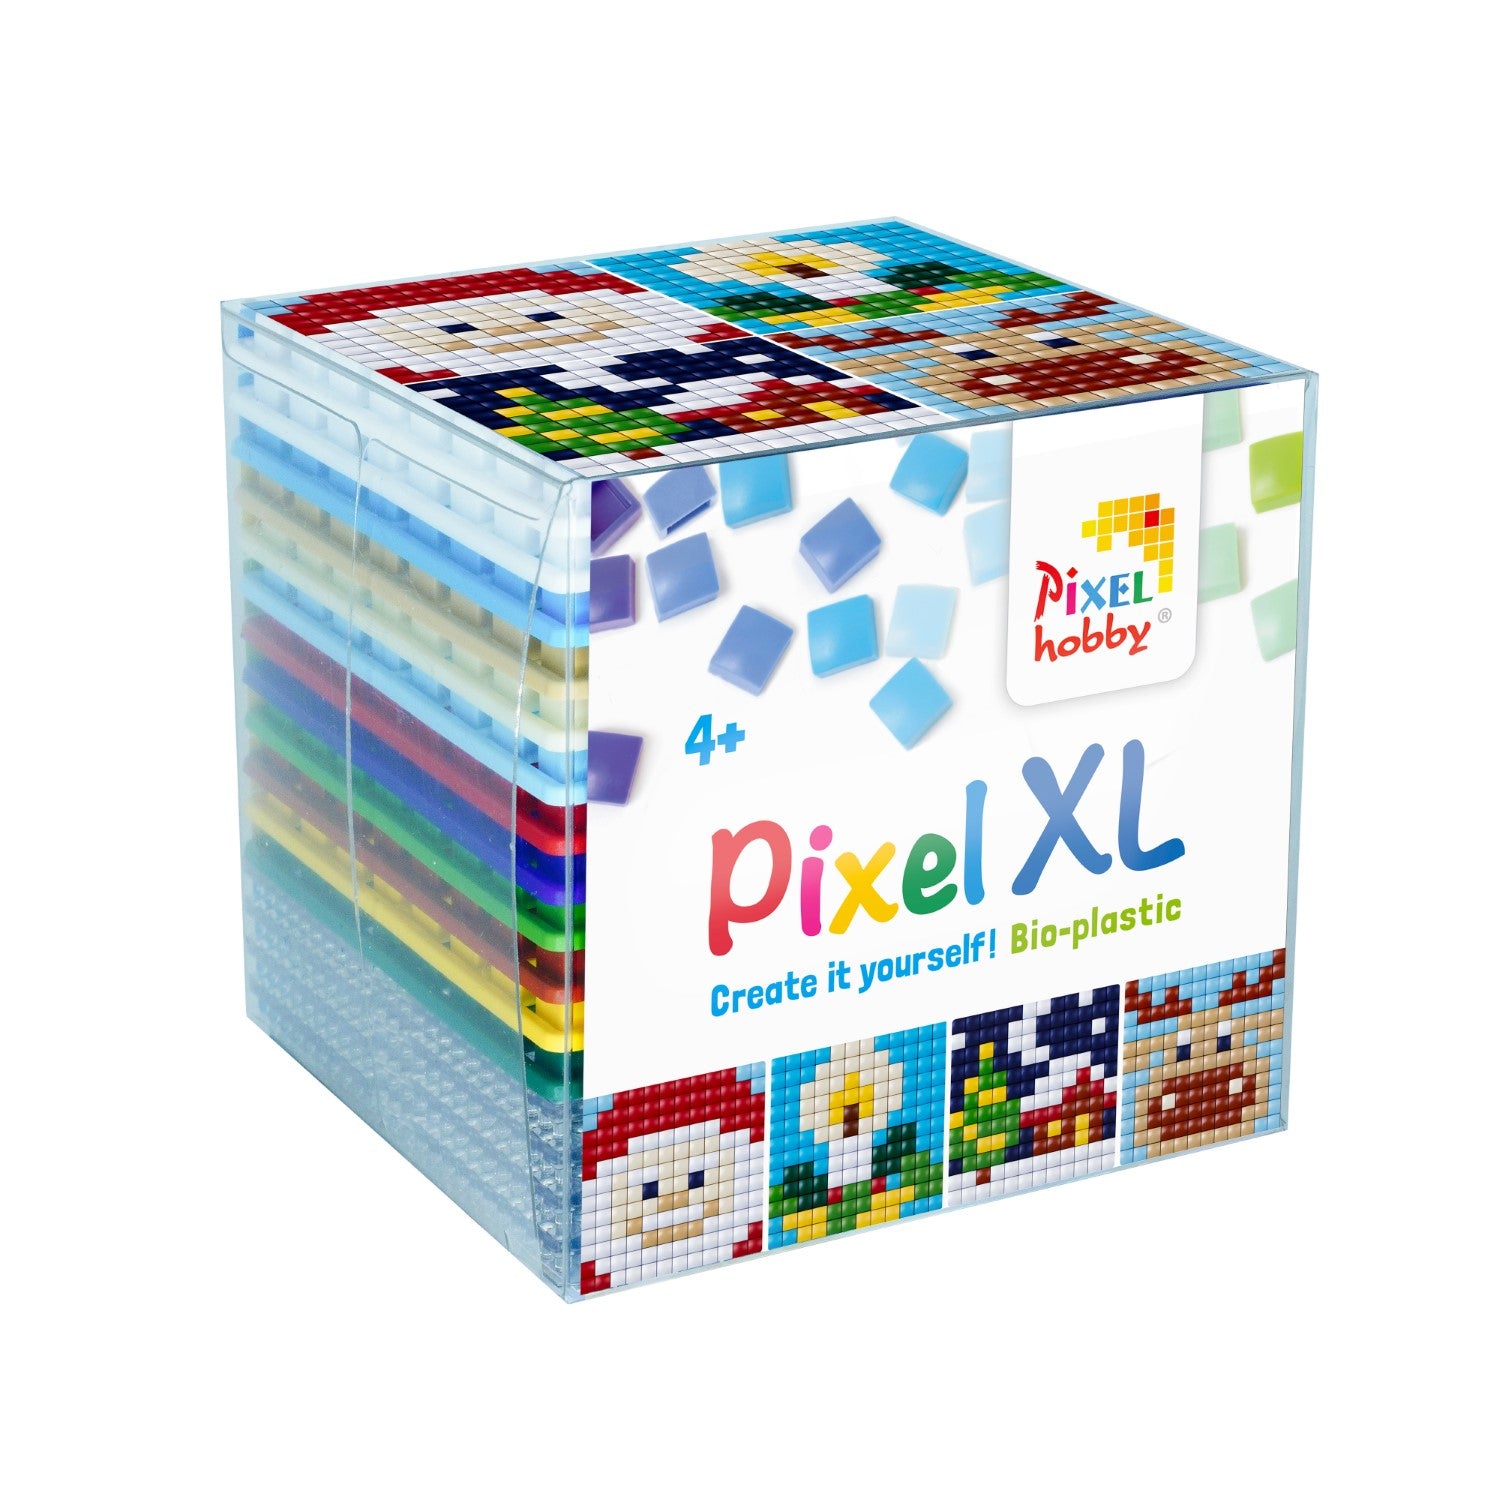 Pixelhobby XL Cube - Christmas